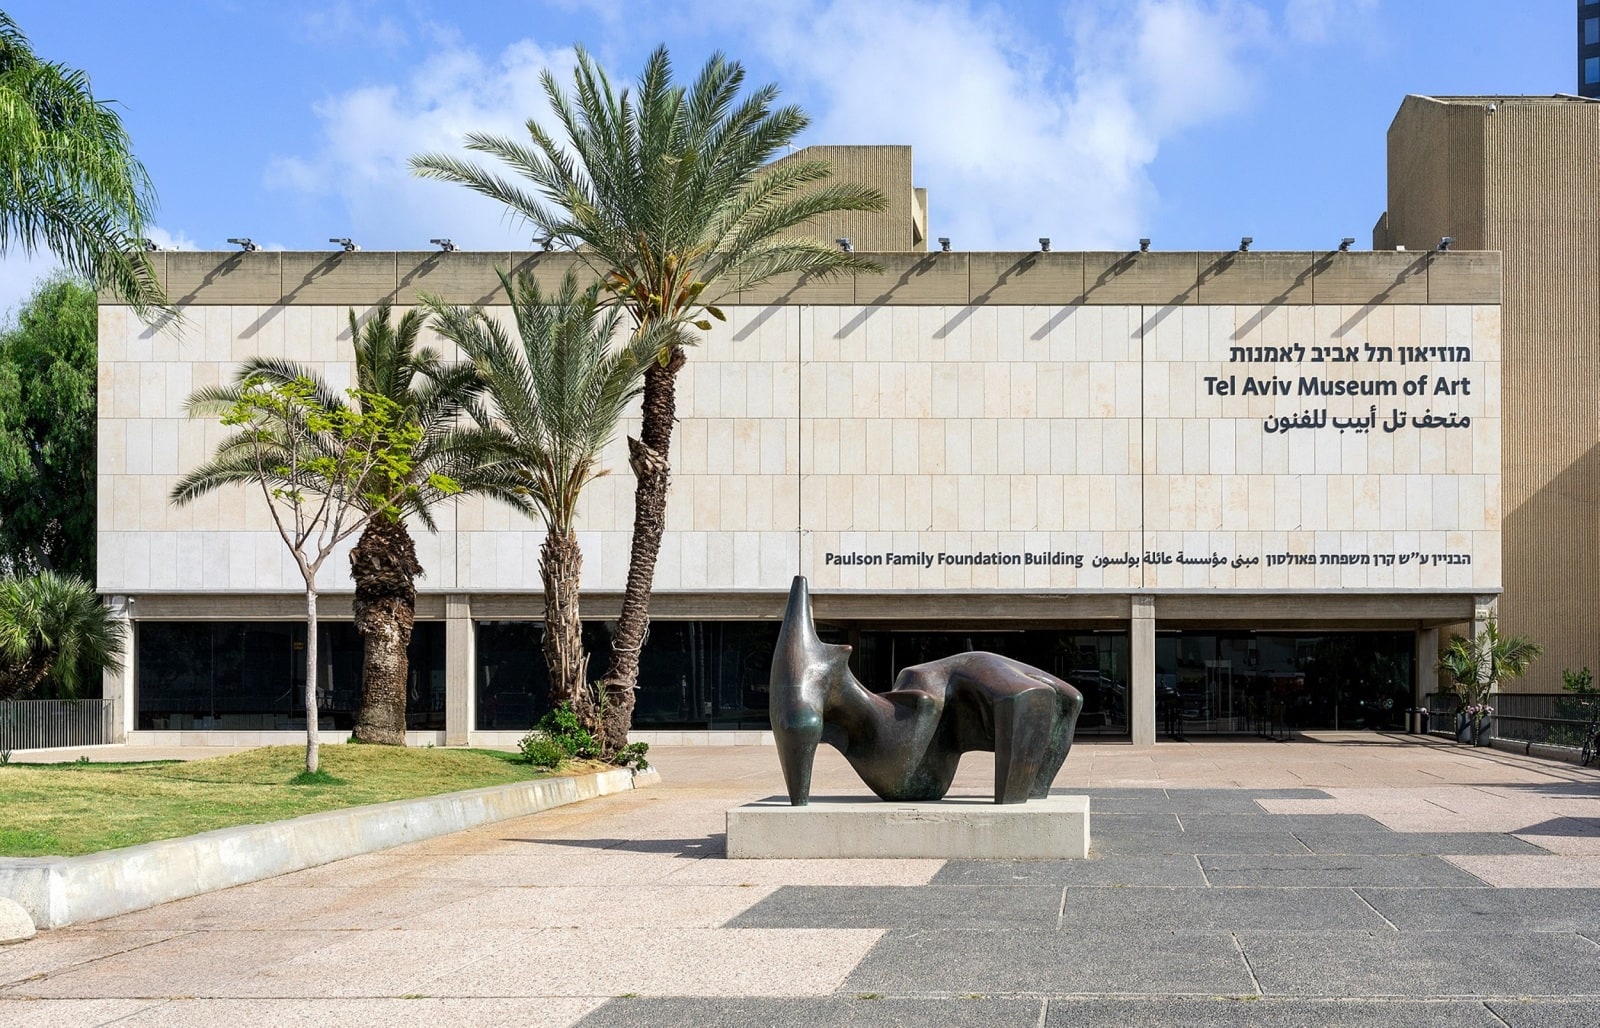 Tel Aviv Museum of Art. Photo by Elad Sarig/Tel Aviv Museum of Art